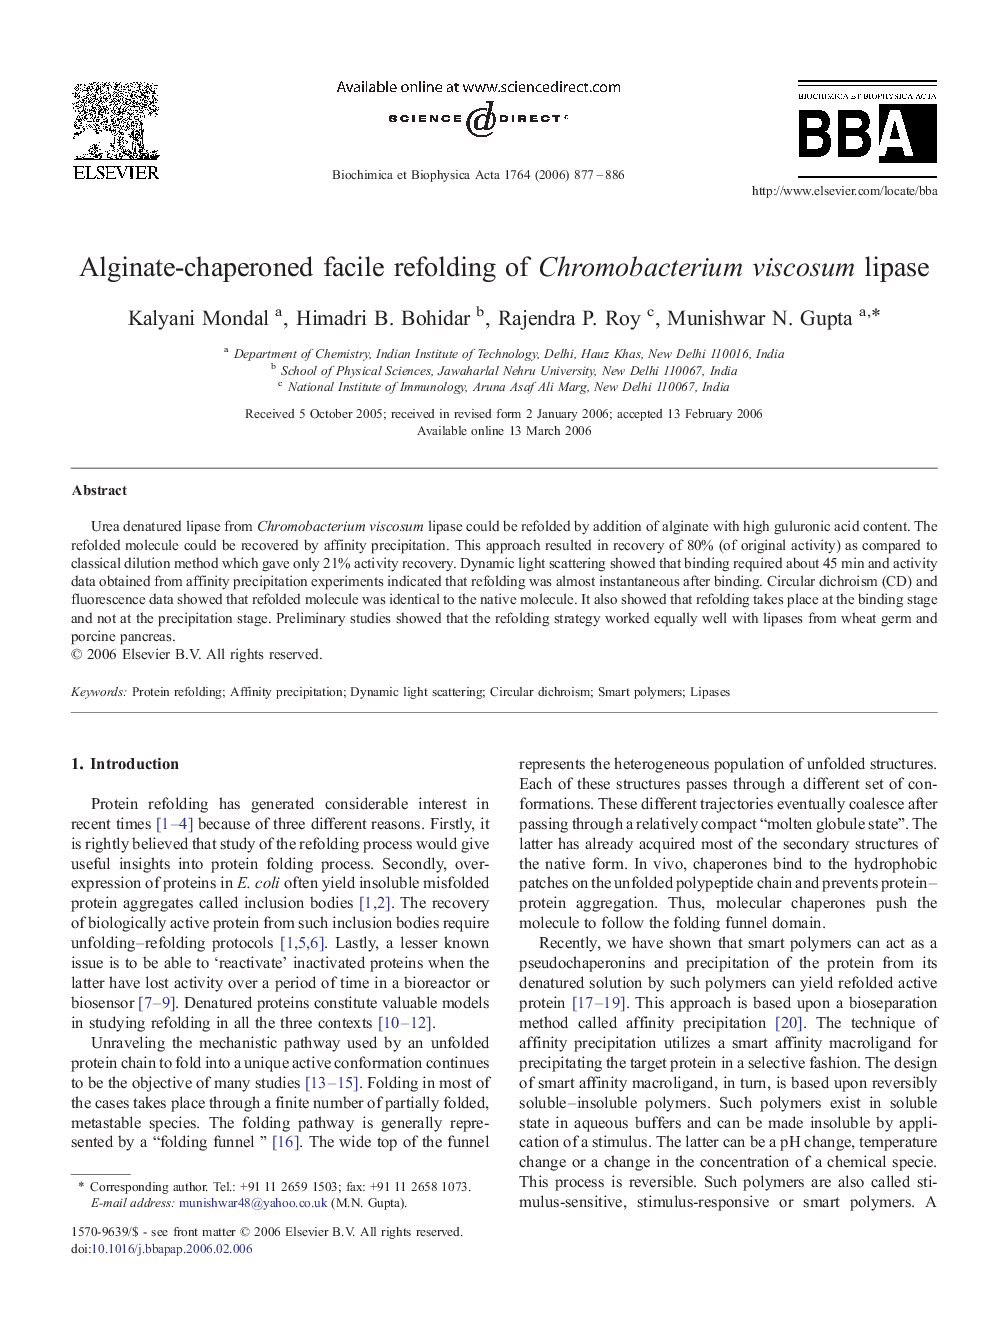 Alginate-chaperoned facile refolding of Chromobacterium viscosum lipase